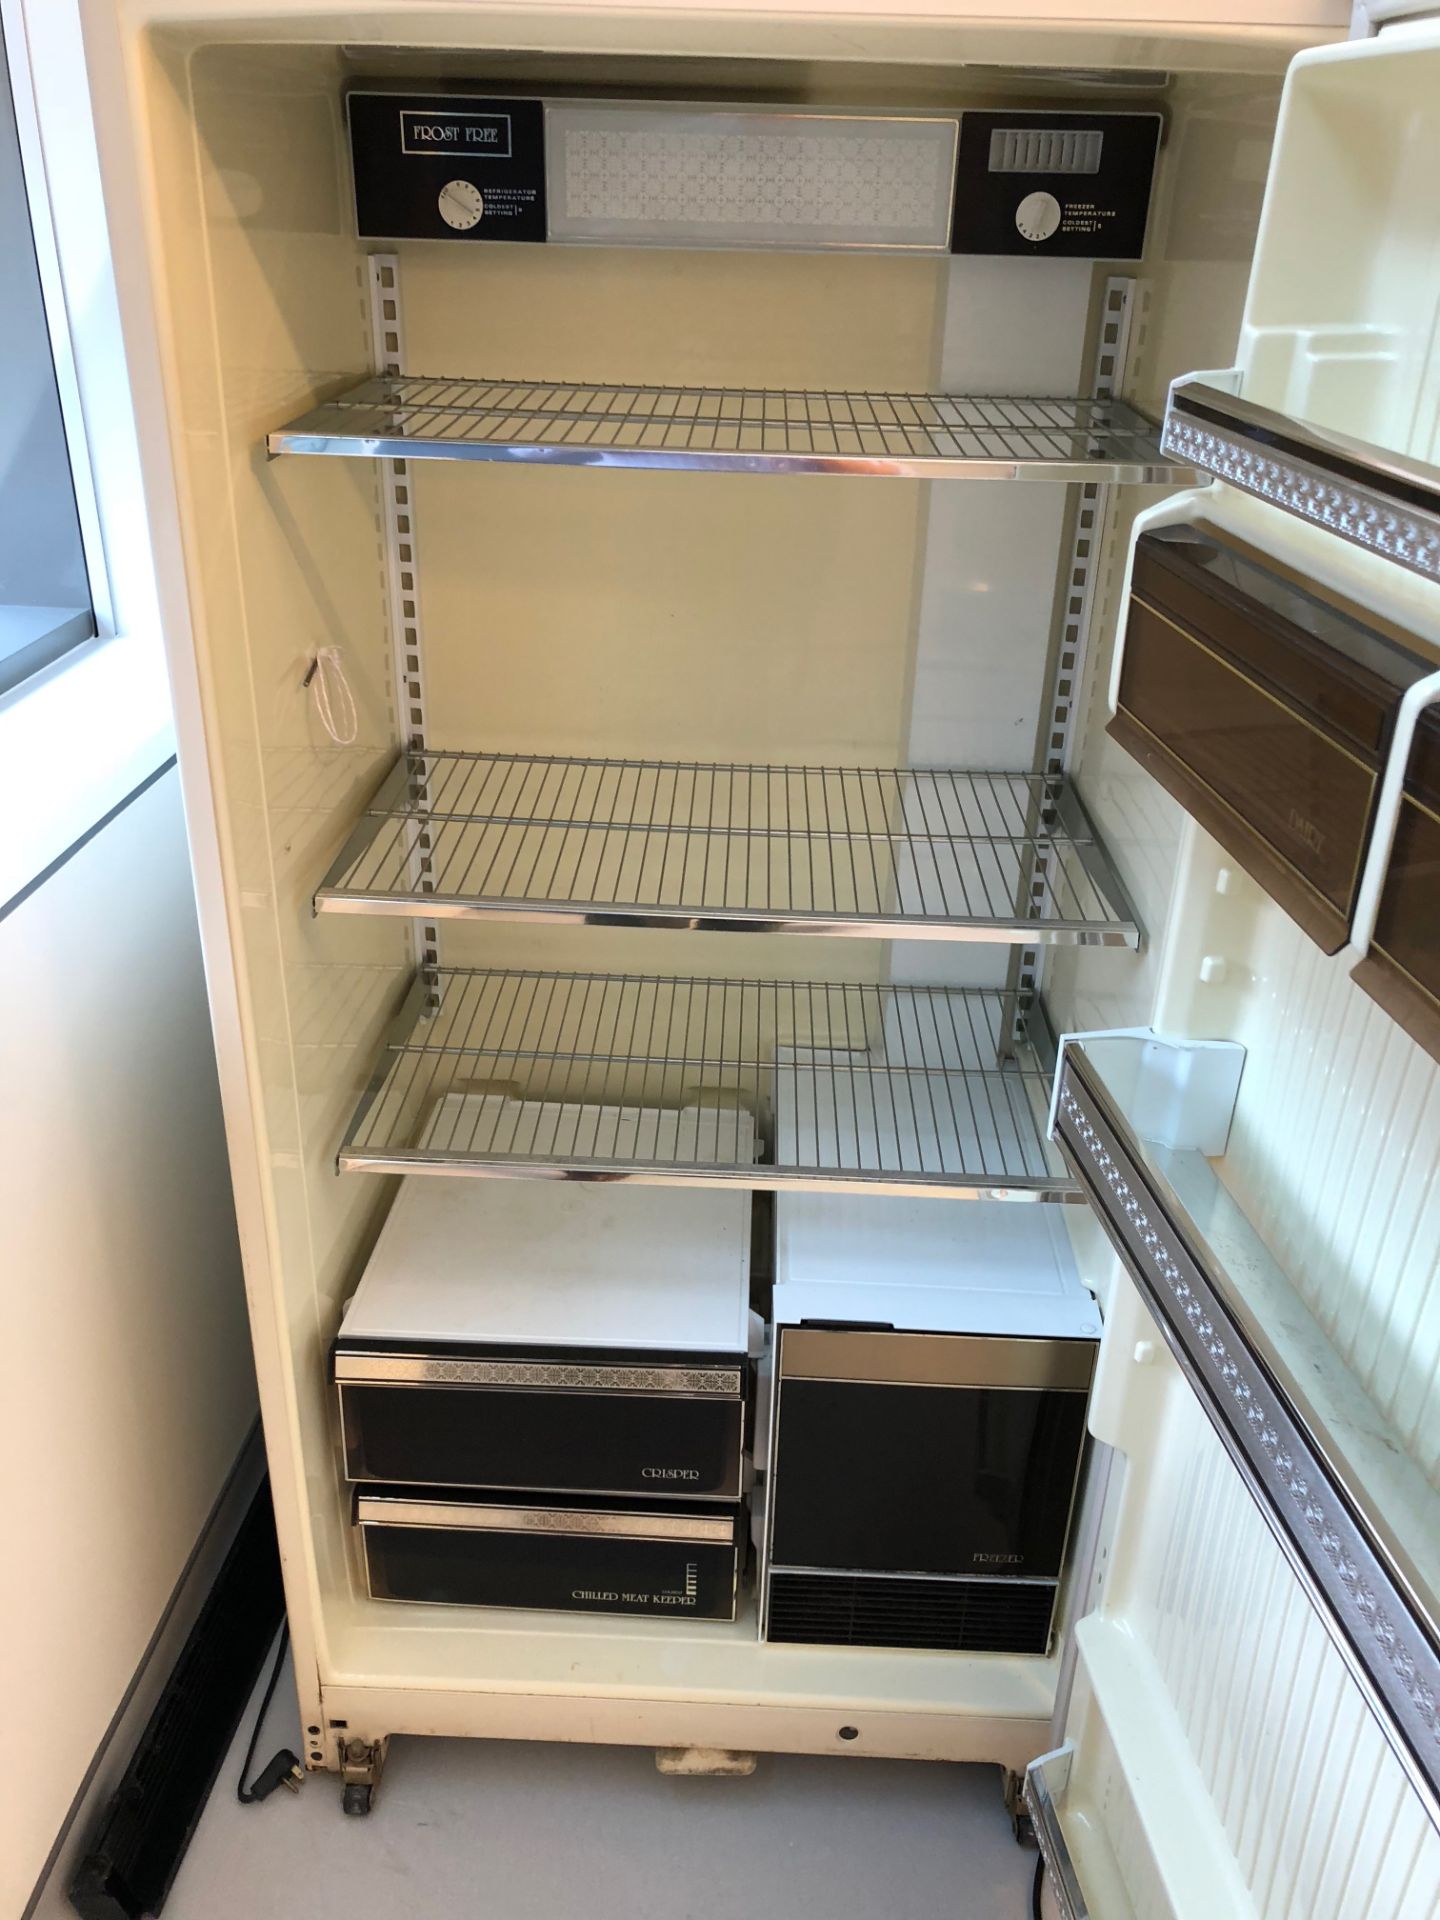 White Westinghouse Refrigerator - Image 2 of 2